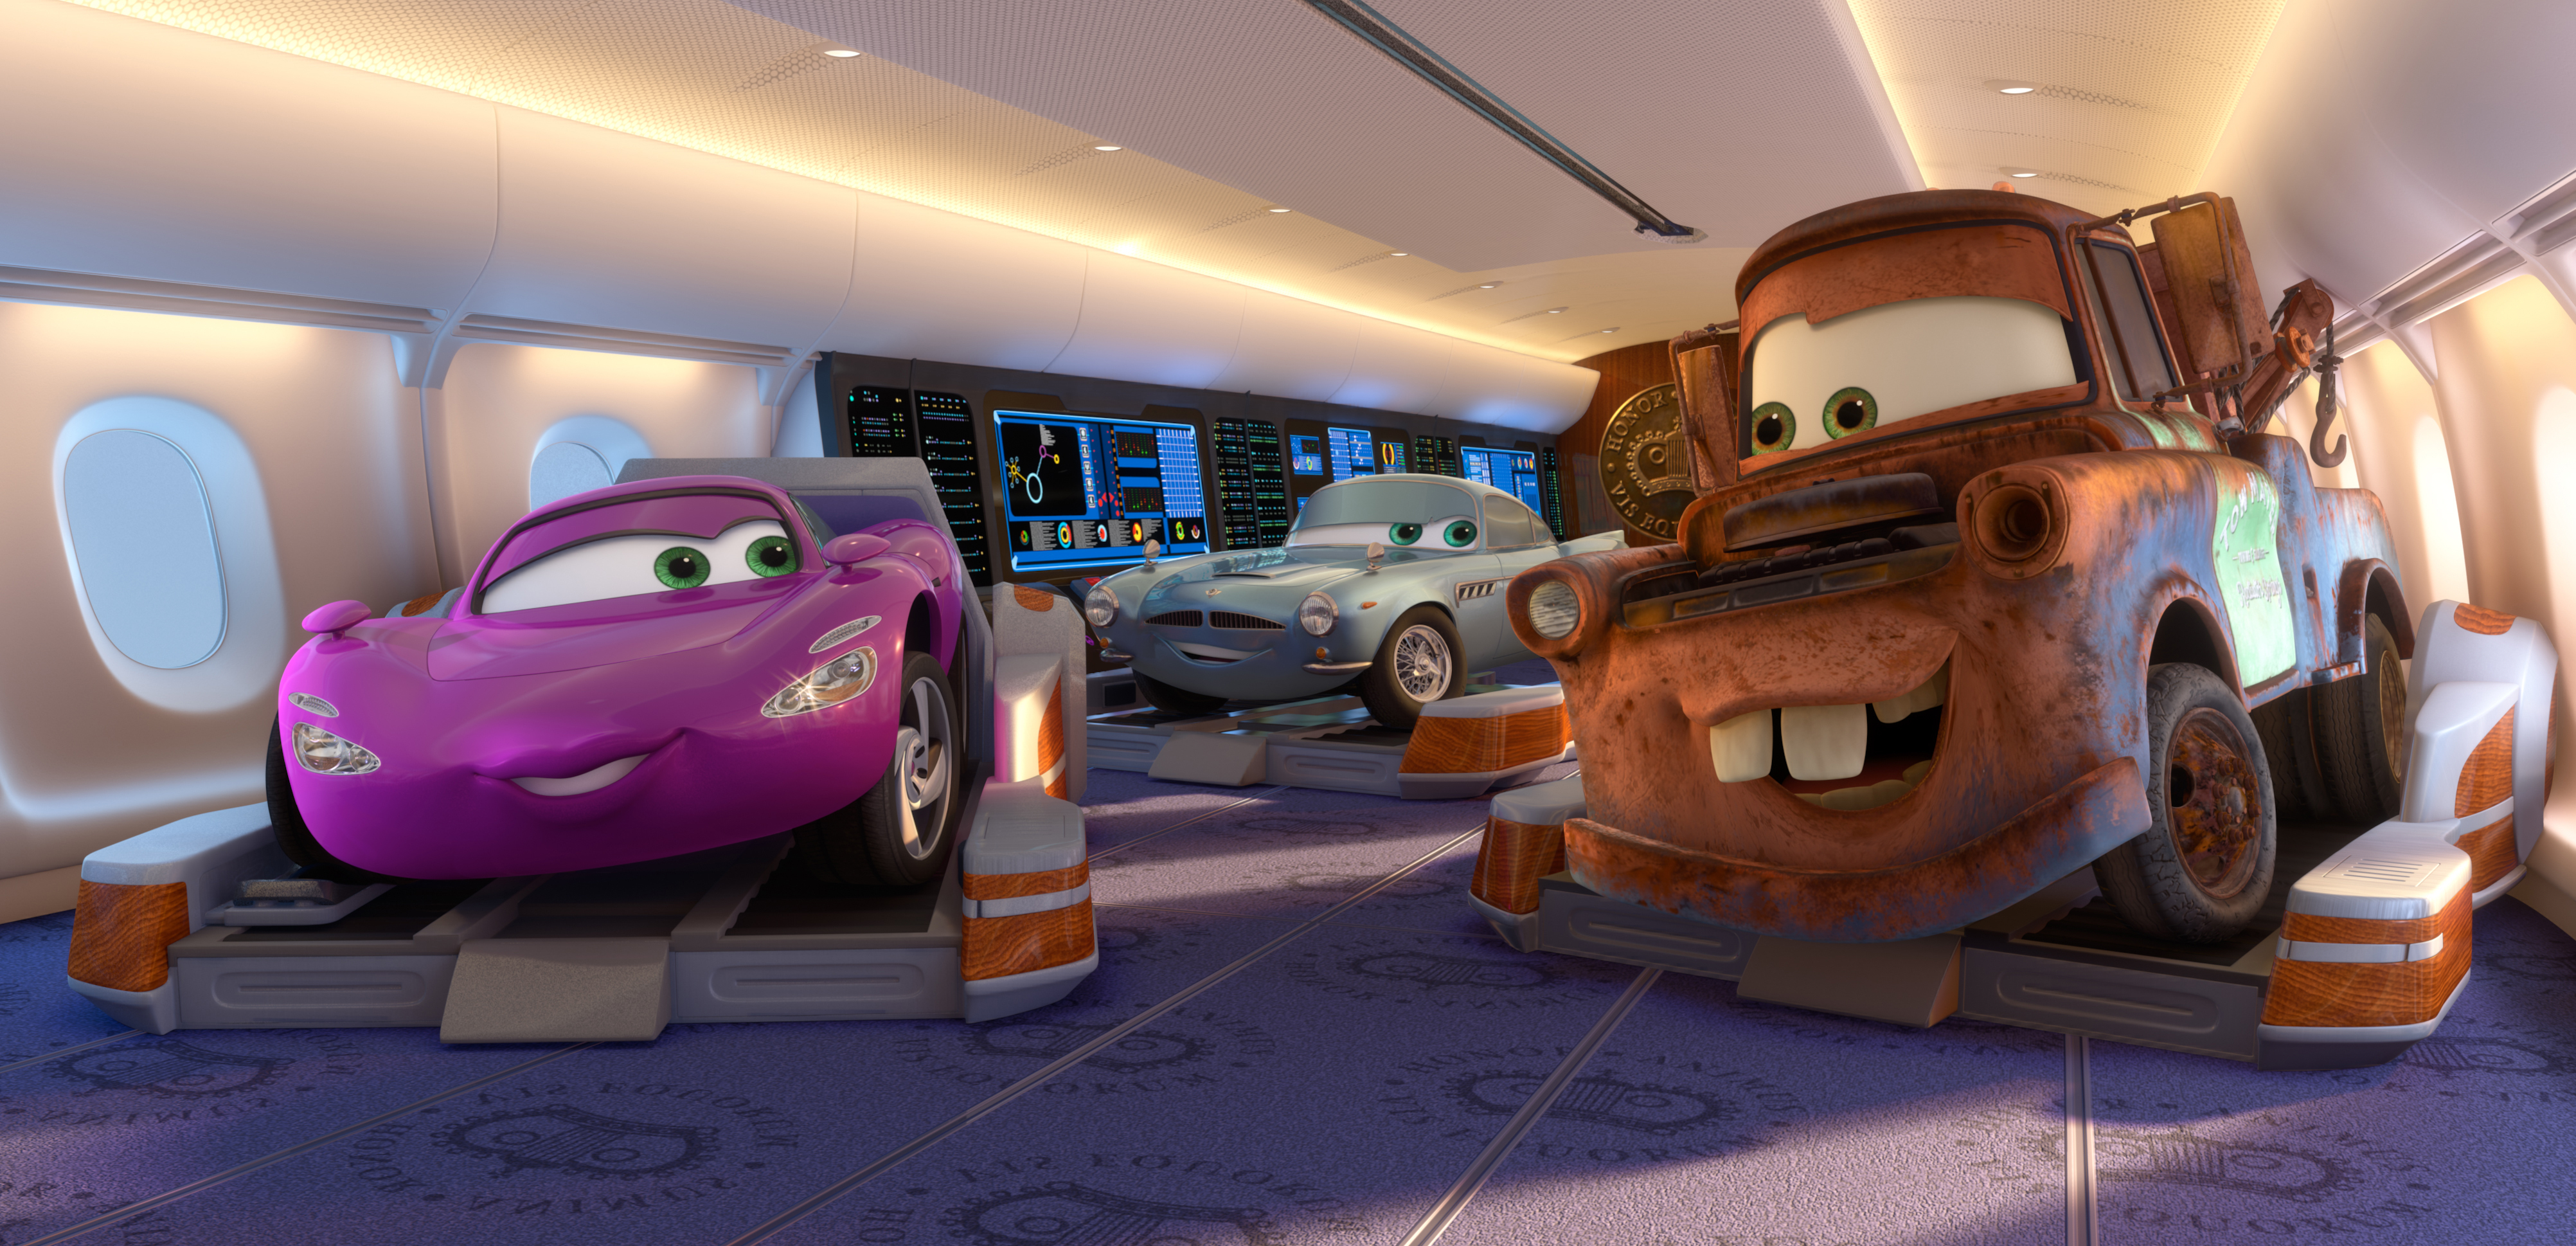 General 4008x1938 car Cars (movie) Pixar Animation Studios vehicle airplane vip animated movies movies Movie Vehicles